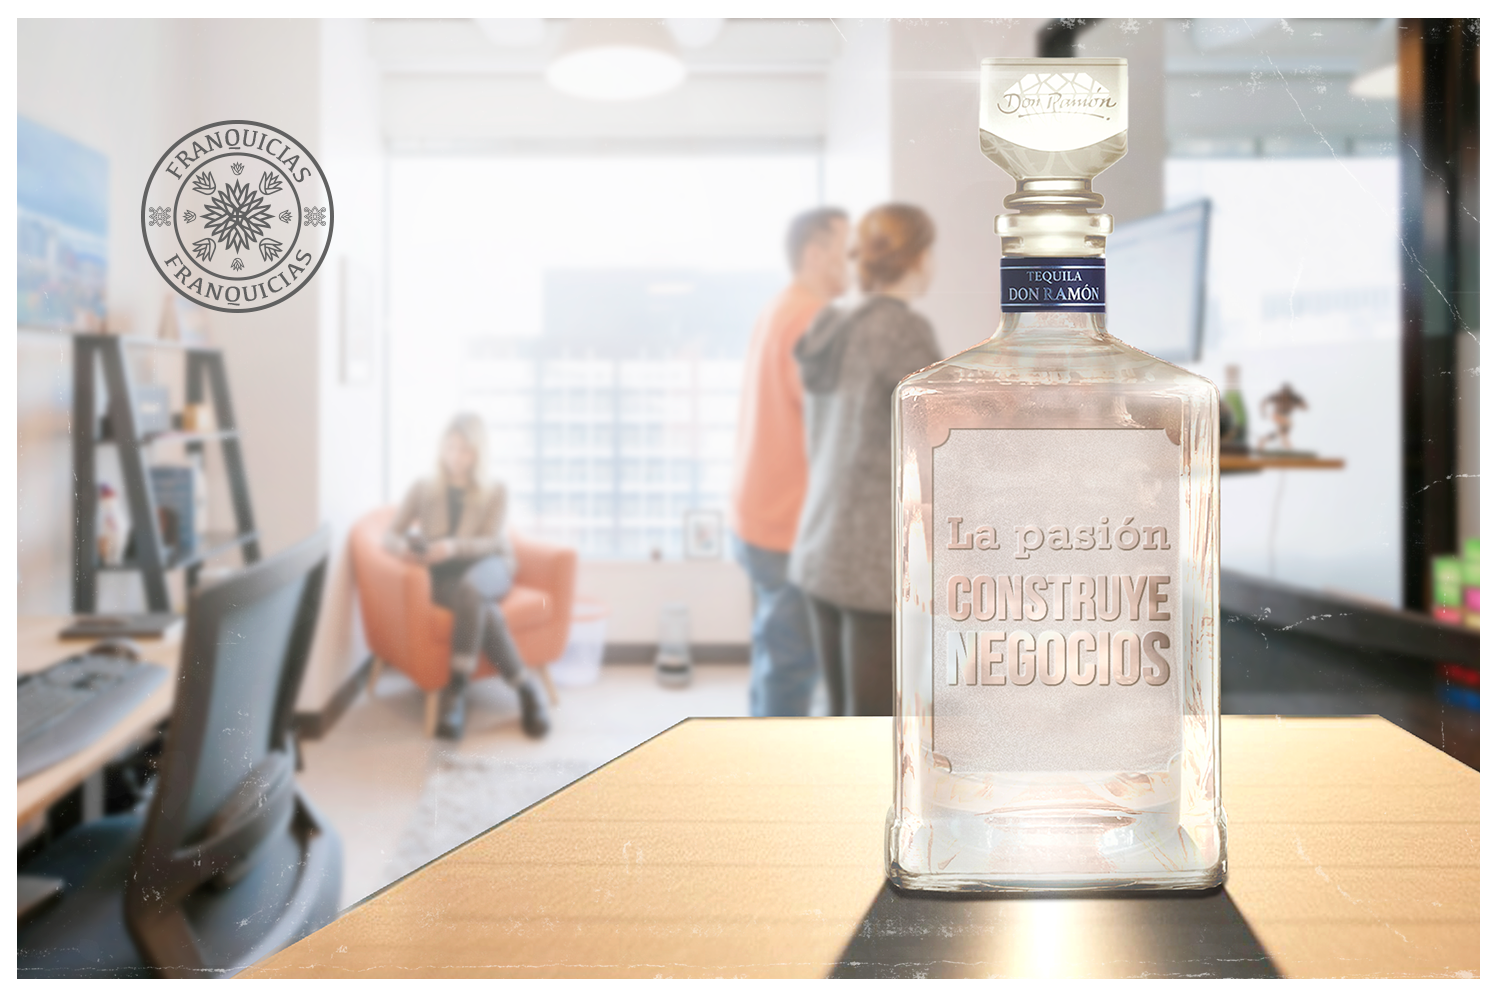 botella de tequila don ramon personalizado en un ambiente de ventas y negocios